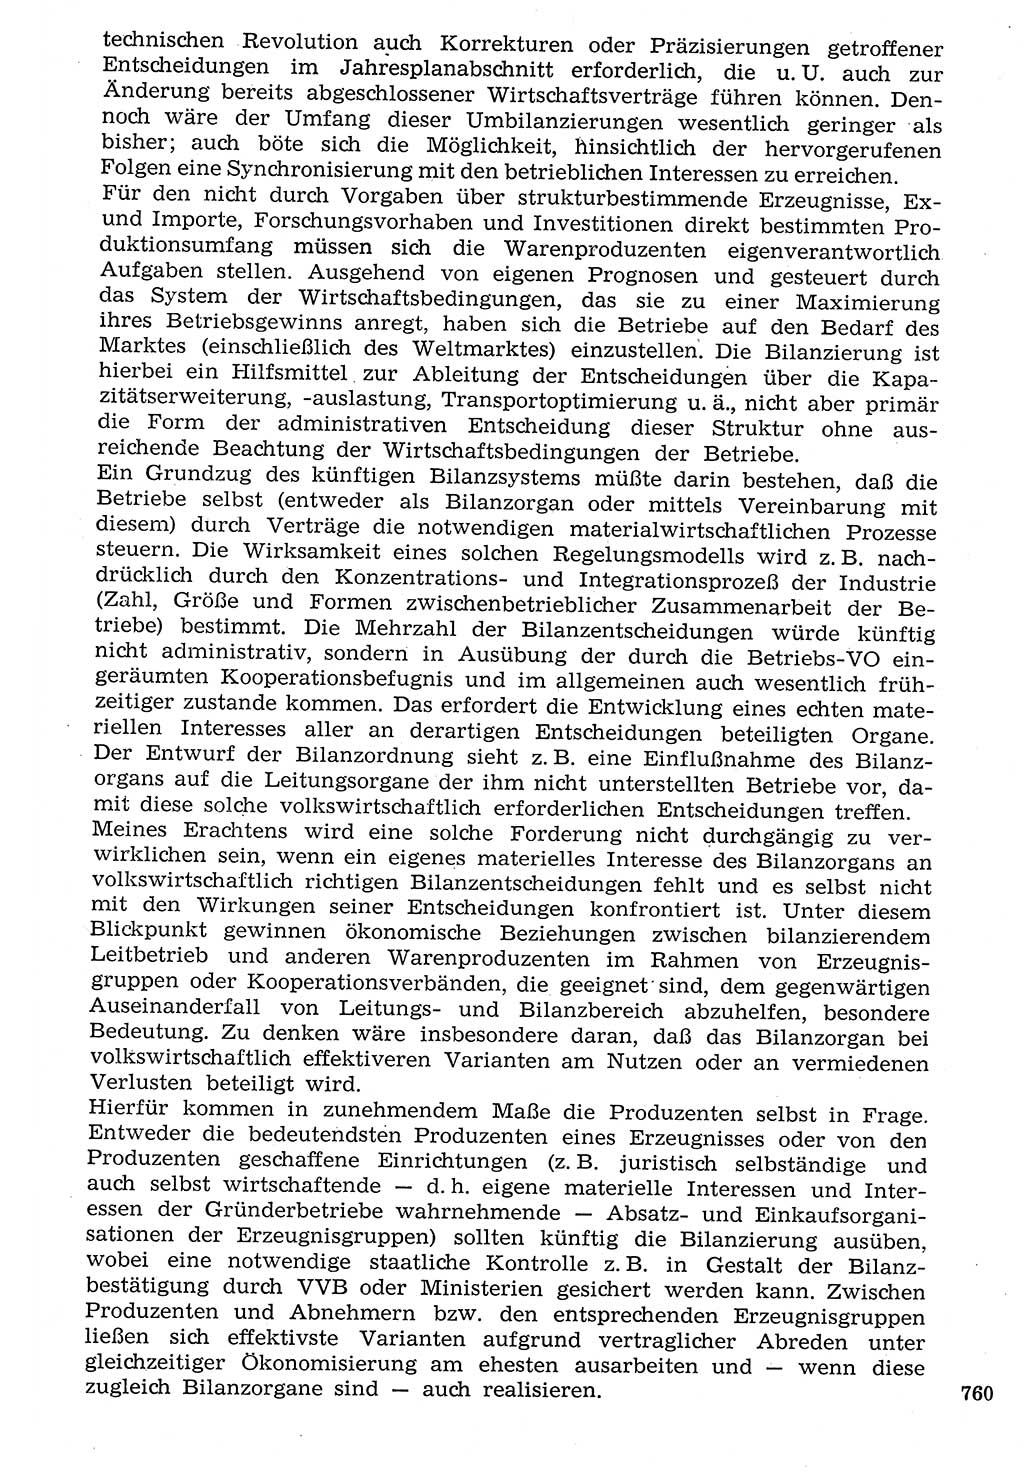 Staat und Recht (StuR), 17. Jahrgang [Deutsche Demokratische Republik (DDR)] 1968, Seite 760 (StuR DDR 1968, S. 760)